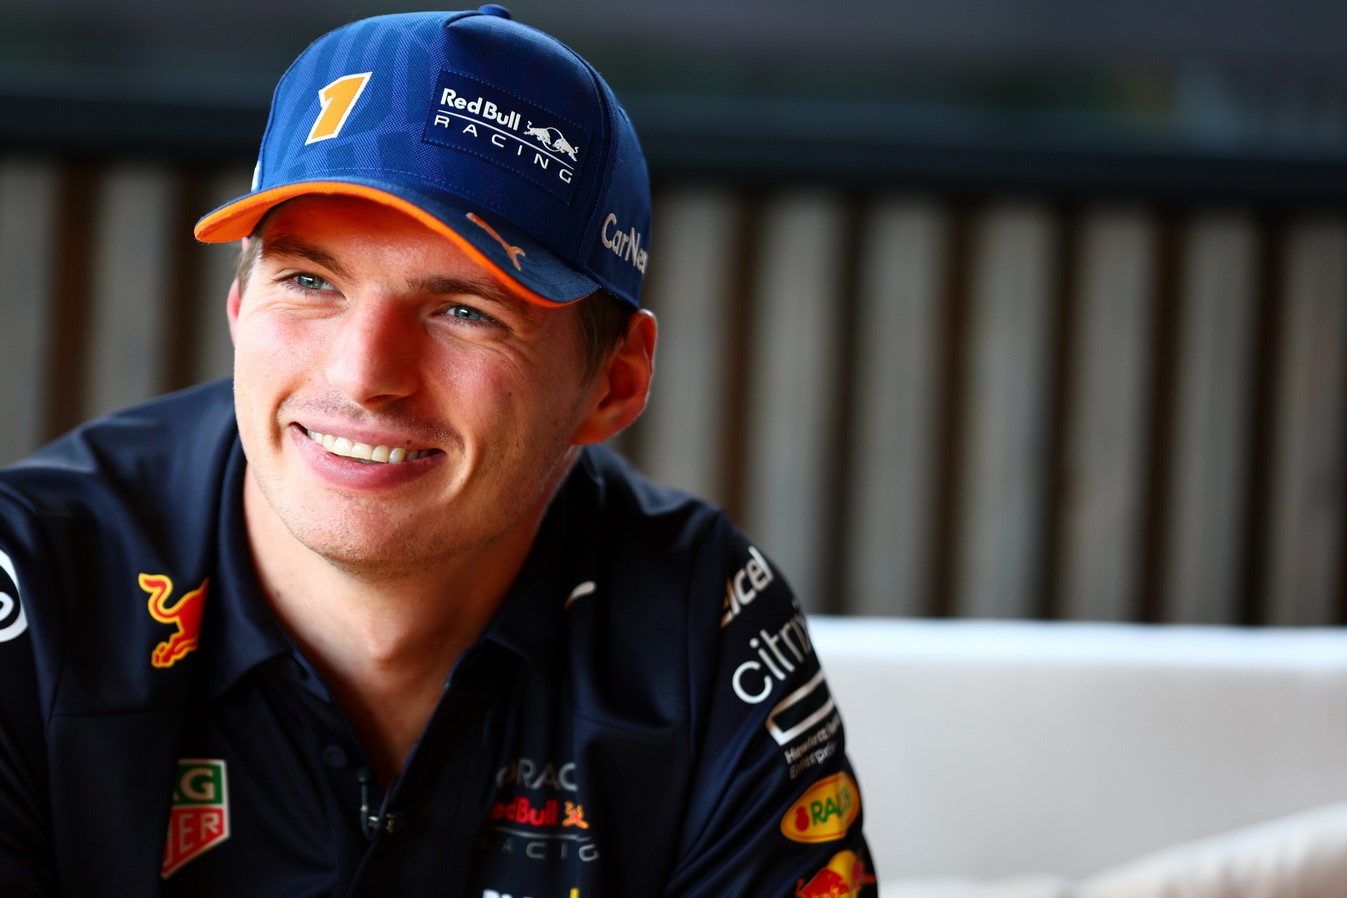 Verstappen en interview dans les hospitalités Red Bull au Grand Prix de Belgique 2022